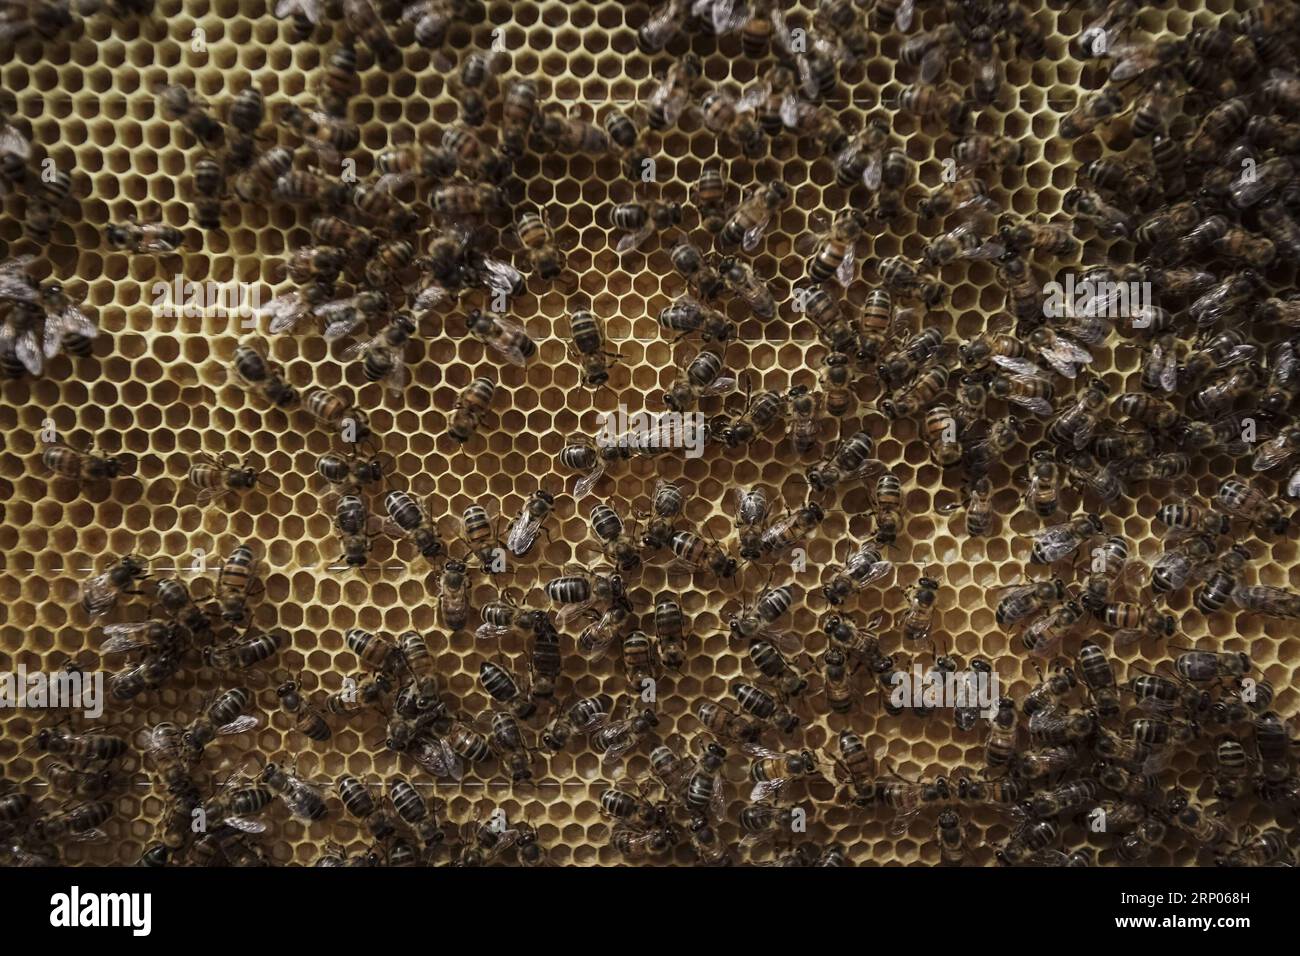 (180422) -- GUASCA, 22 avril 2018 -- une image prise le 18 avril 2018 montre des abeilles dans une ruche de la réserve naturelle Montiel de Guasca en Colombie. (cr) (vf) COLOMBIE-GUASCA-APICULTURE-JOUR DE LA TERRE JHONxPAZ PUBLICATIONxNOTxINxCHN Banque D'Images